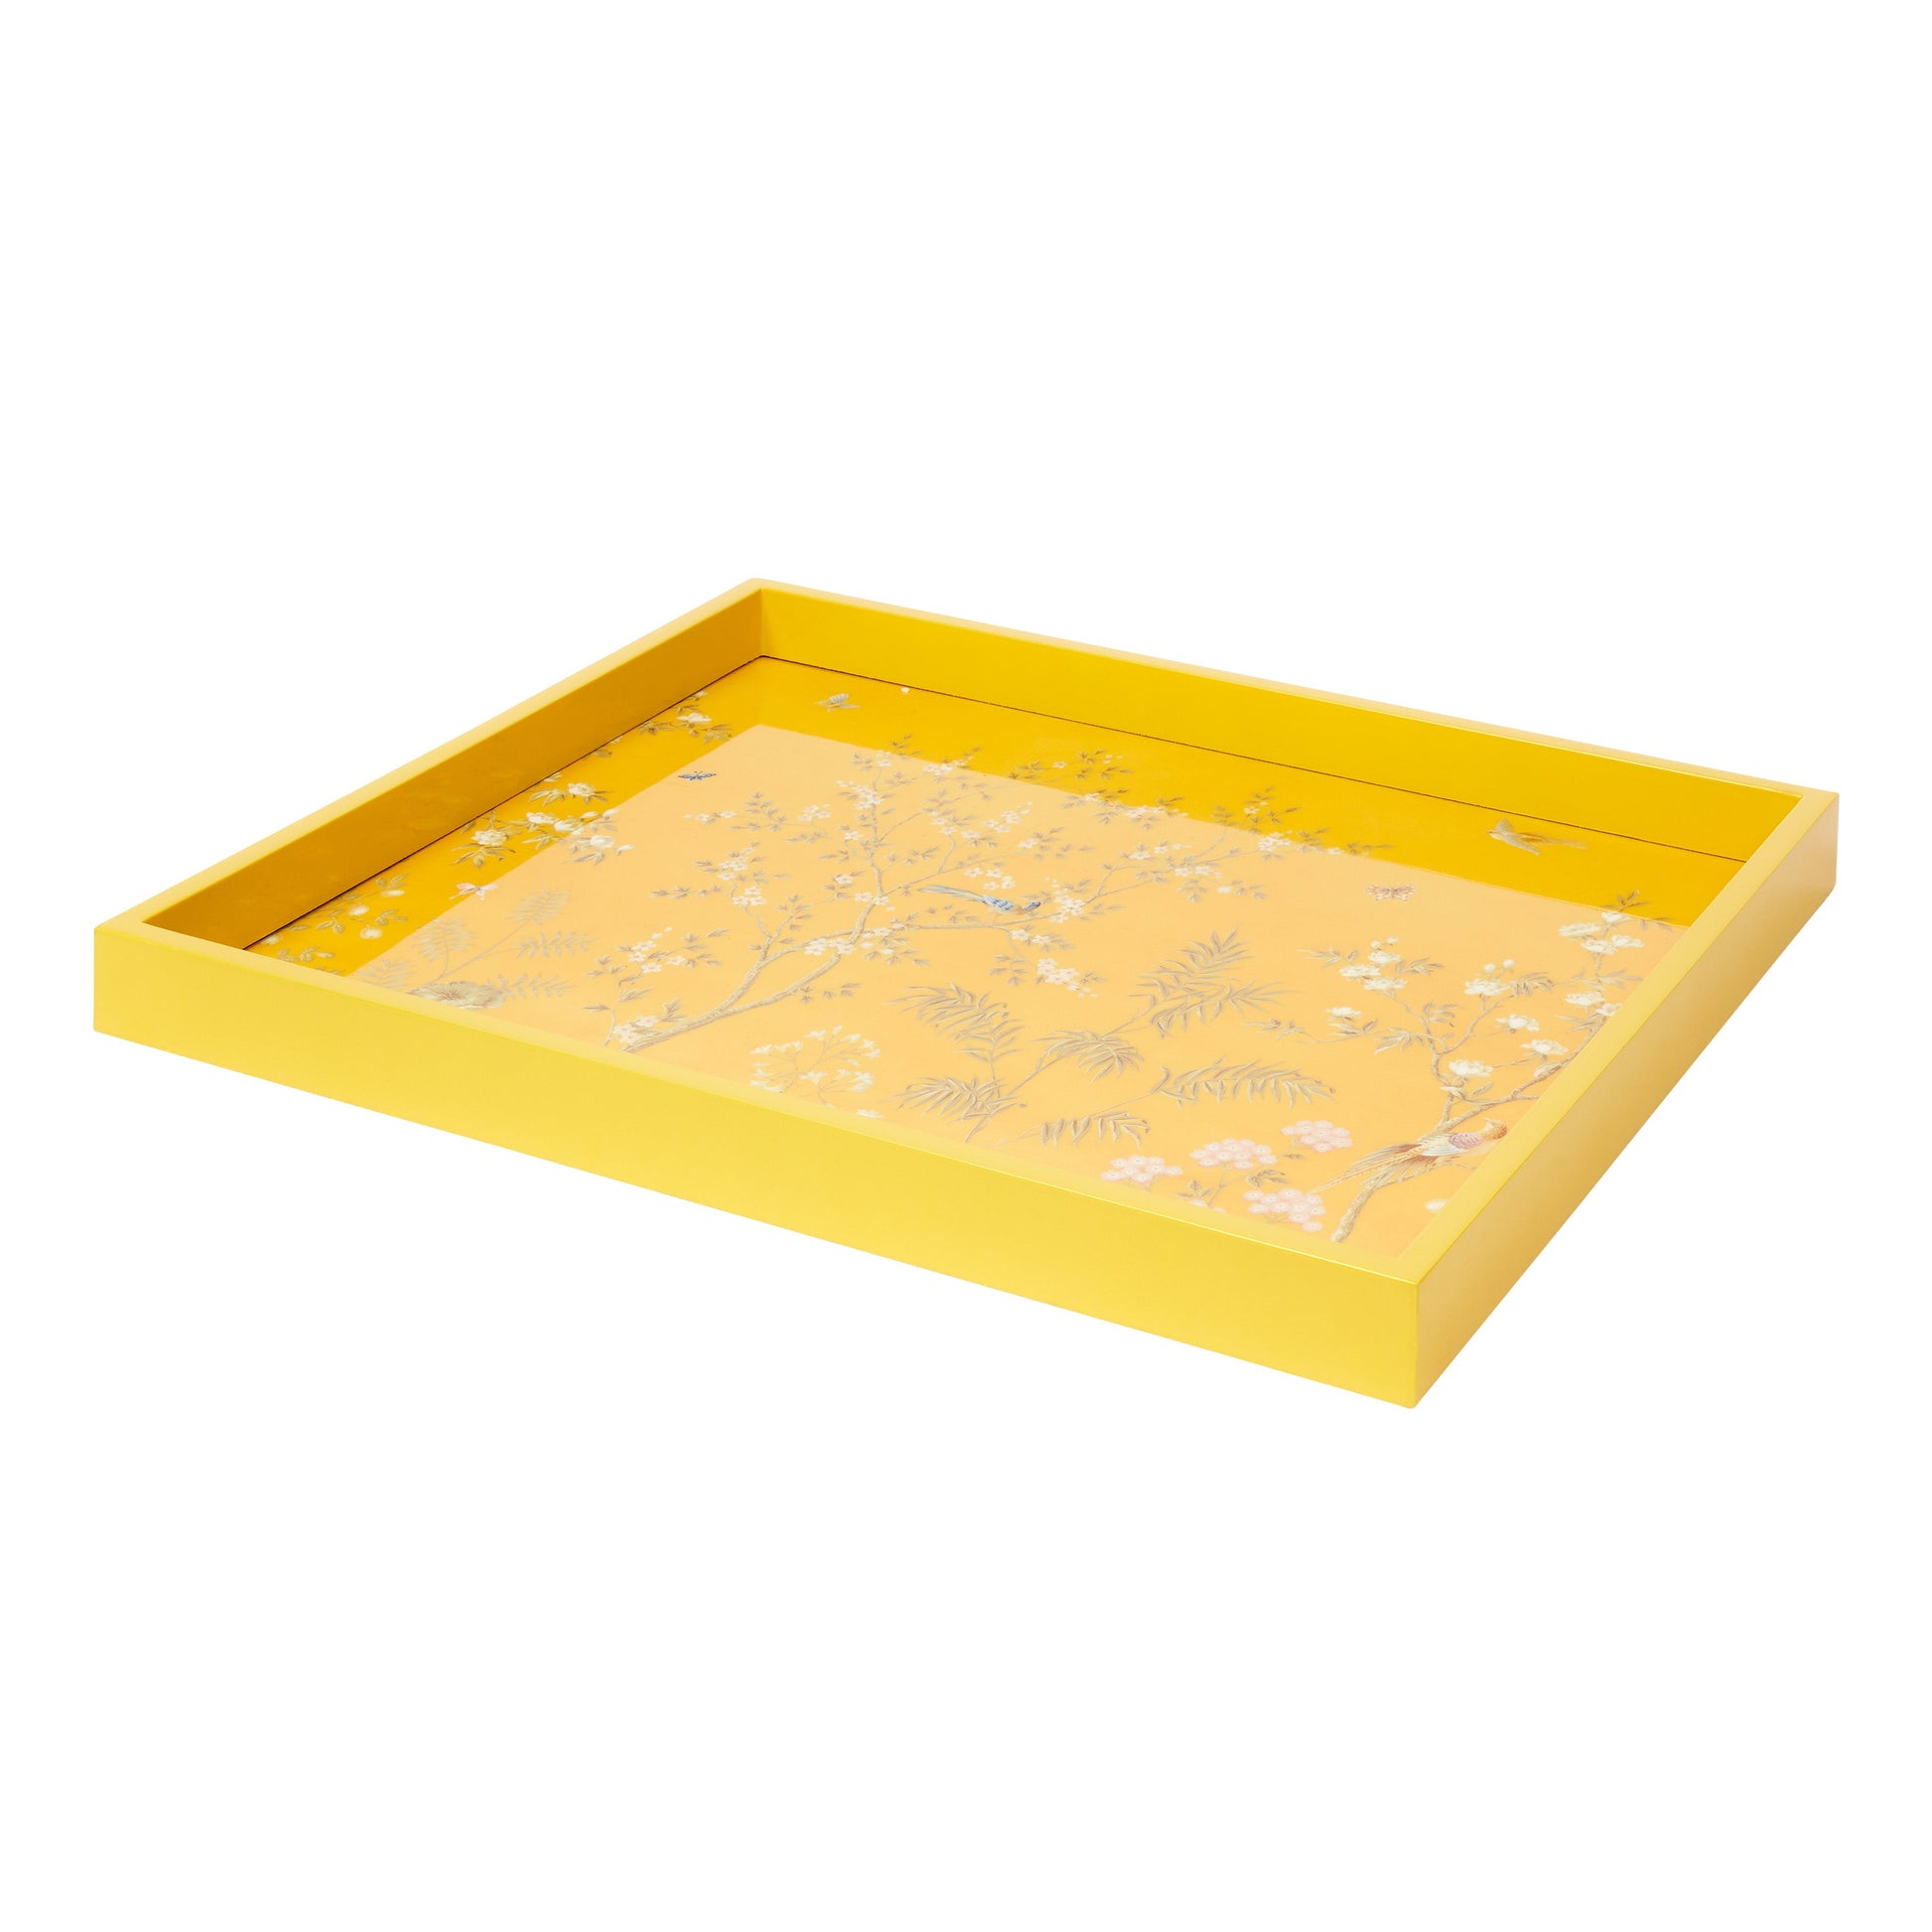 Yellow Medium Chinoiserie Tray - Addison Ross Ltd UK